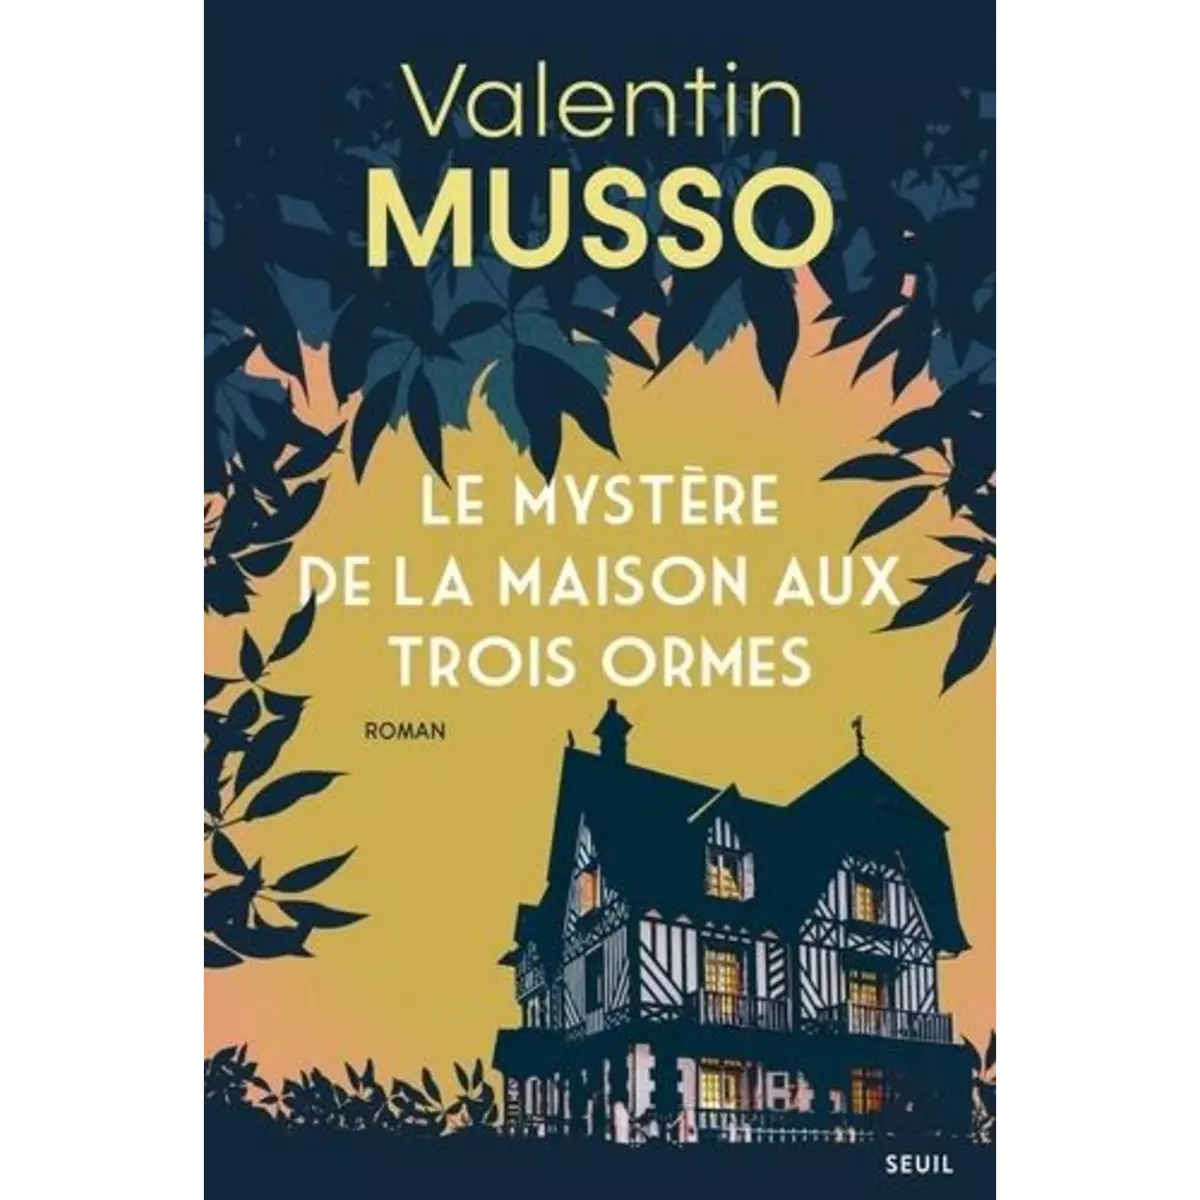  LE MYSTERE DE LA MAISON AUX TROIS ORMES, Musso Valentin